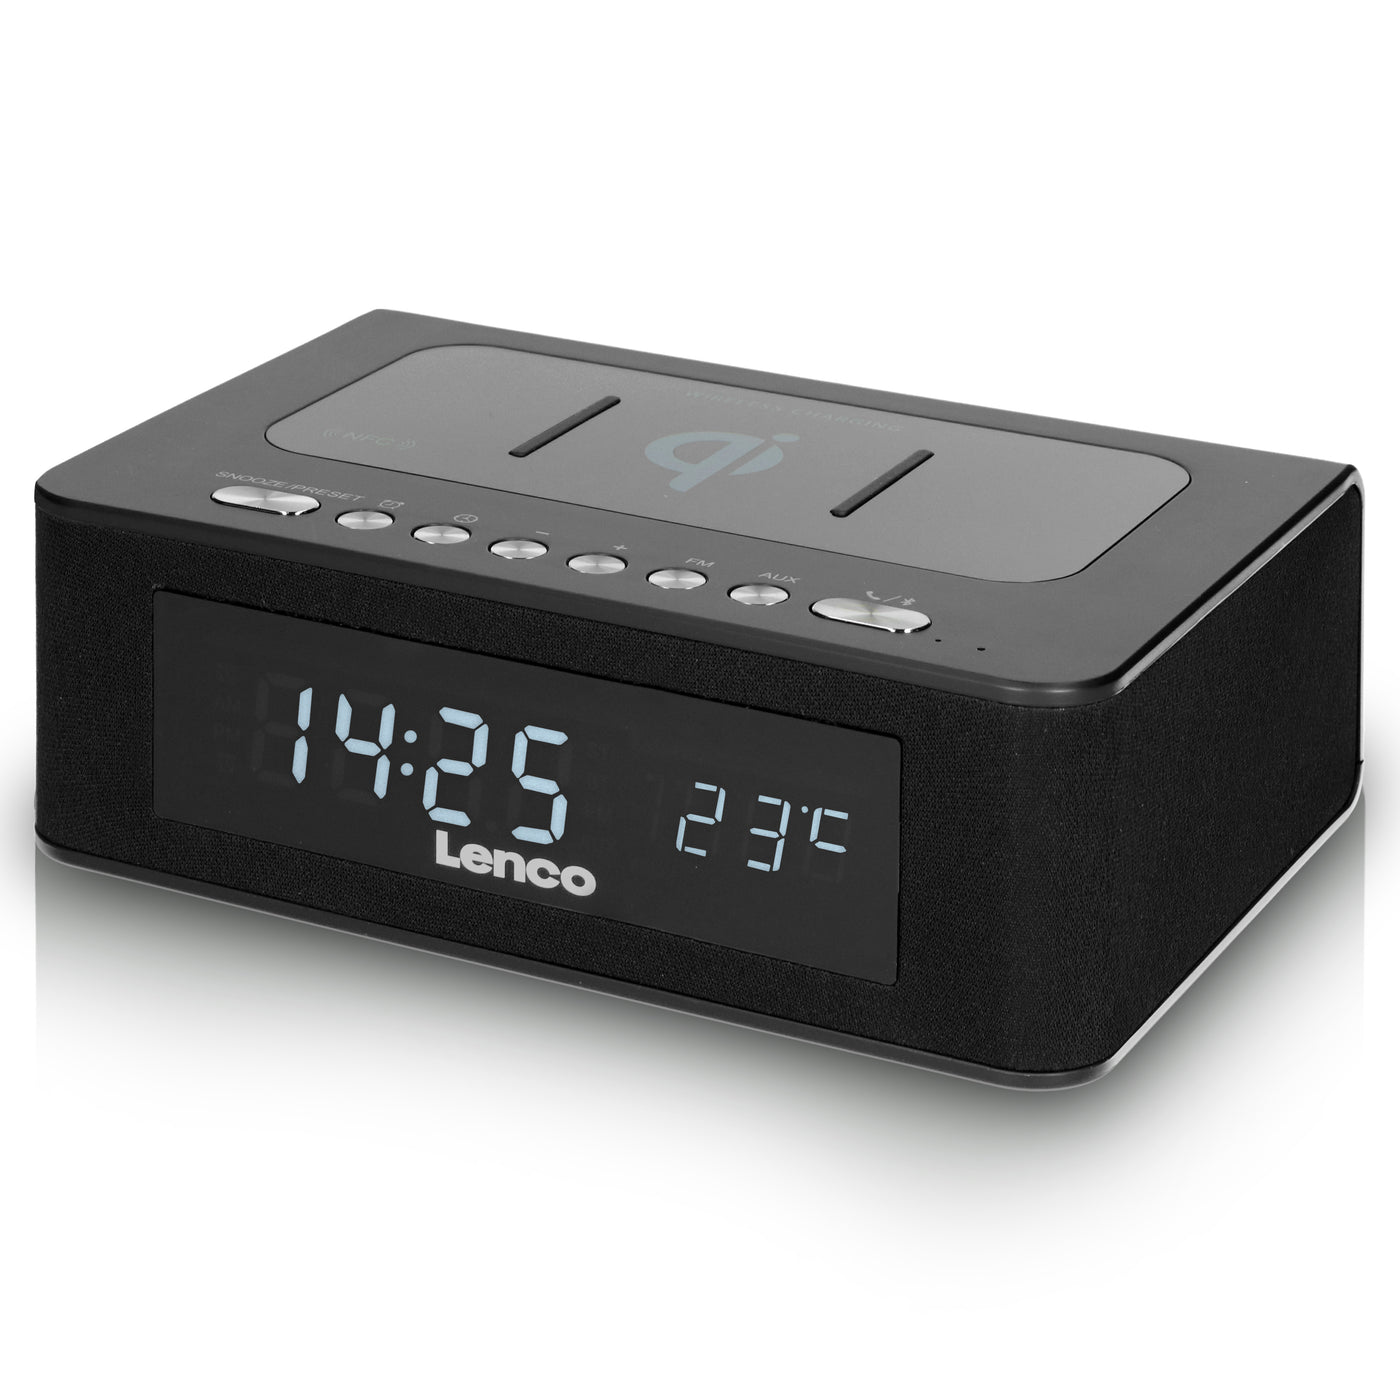 Lenco CR-580BK - Radio-réveil FM stéréo avec Bluetooth®, USB et chargeur sans fil Qi - Noir